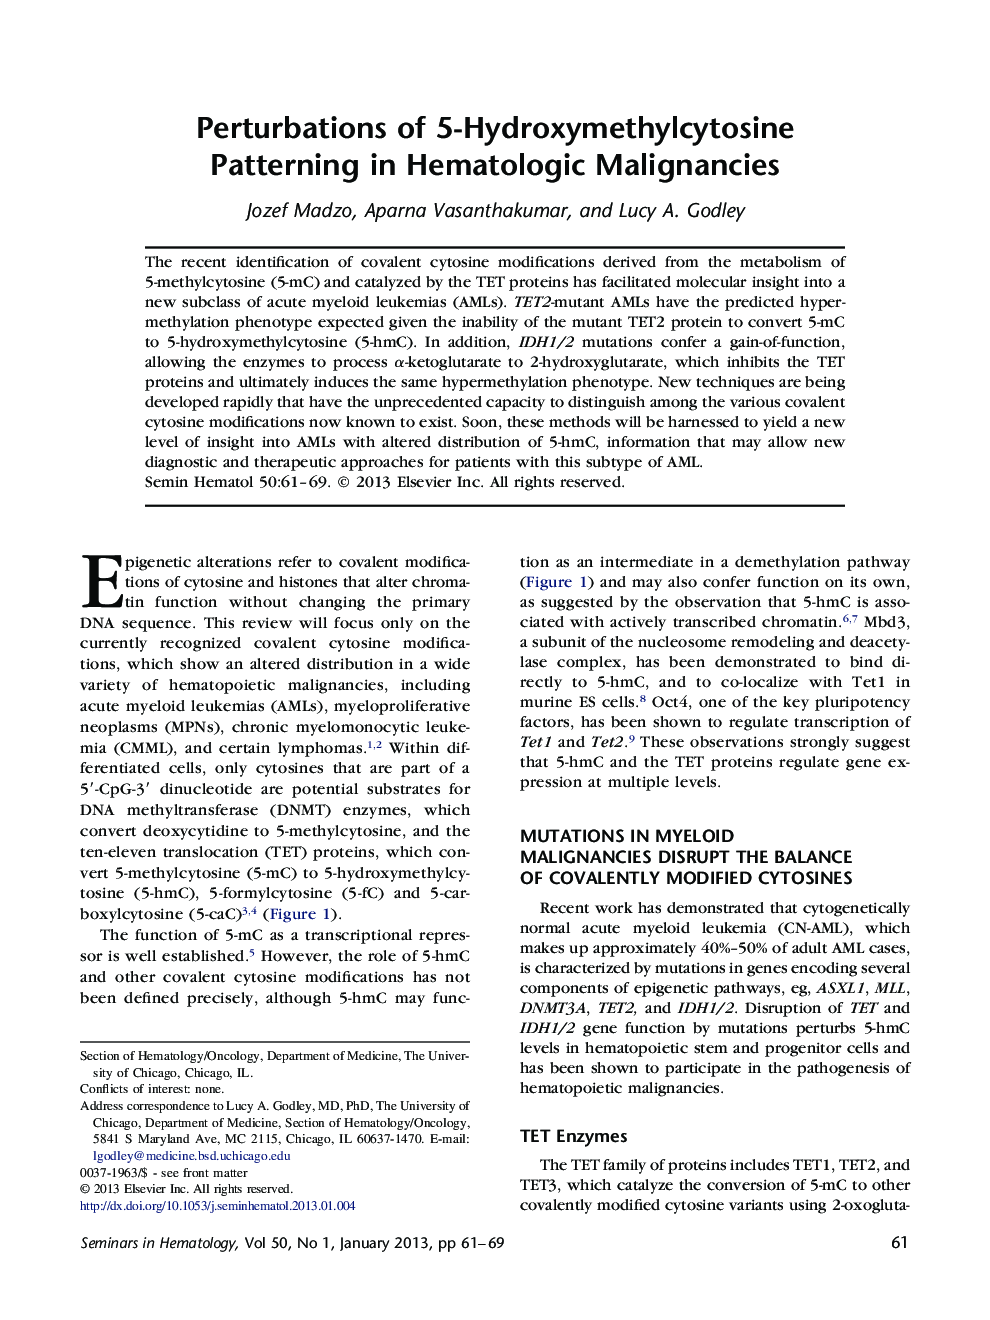 Perturbations of 5-Hydroxymethylcytosine Patterning in Hematologic Malignancies